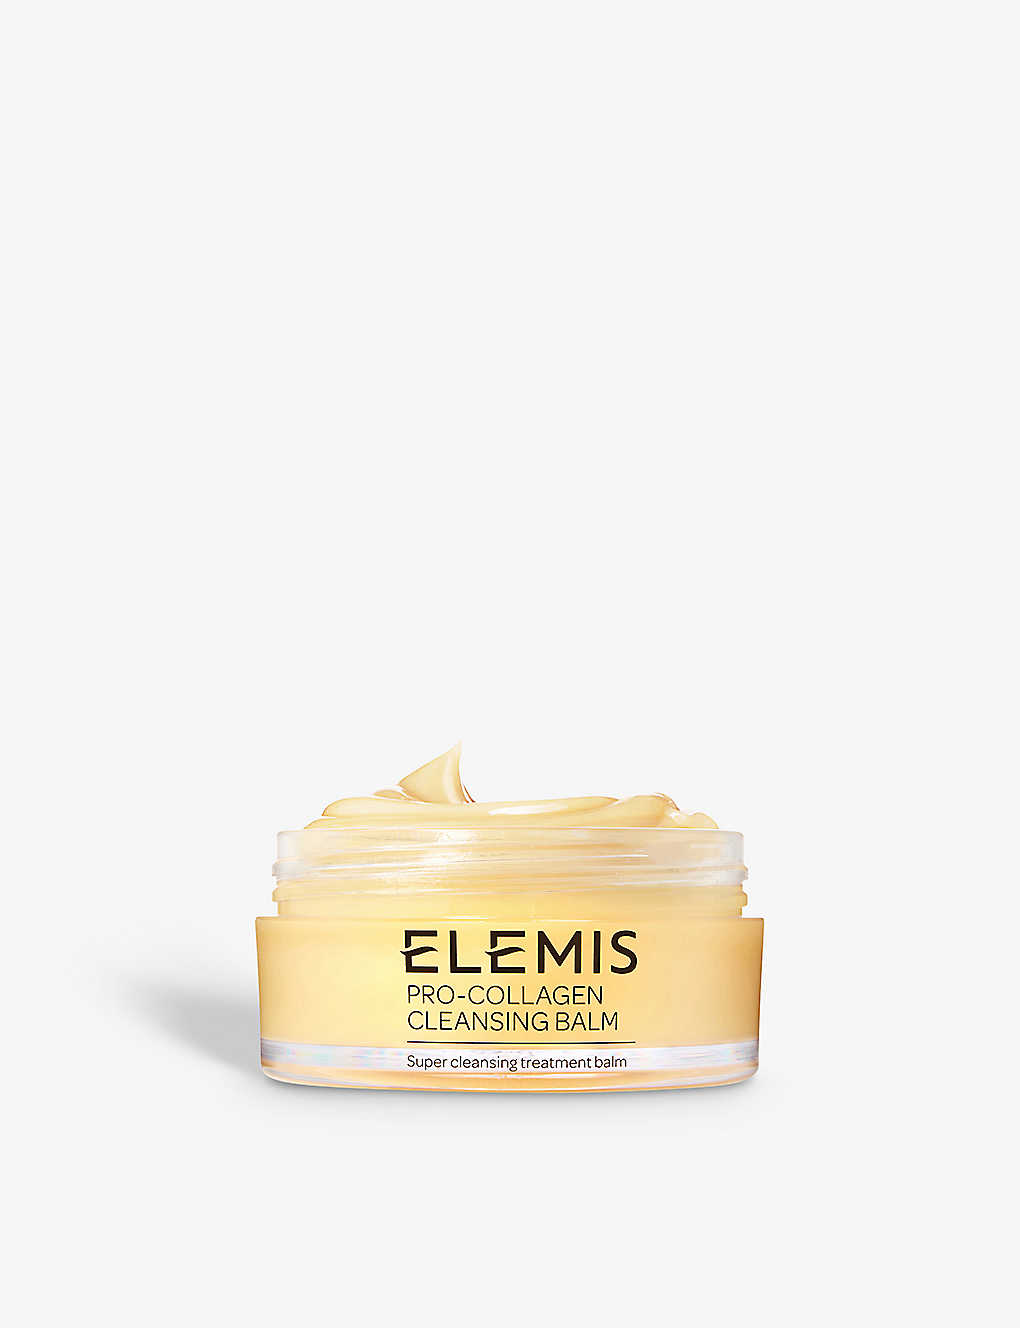 Elemis Pro-collagen Cleansing Balm 100g